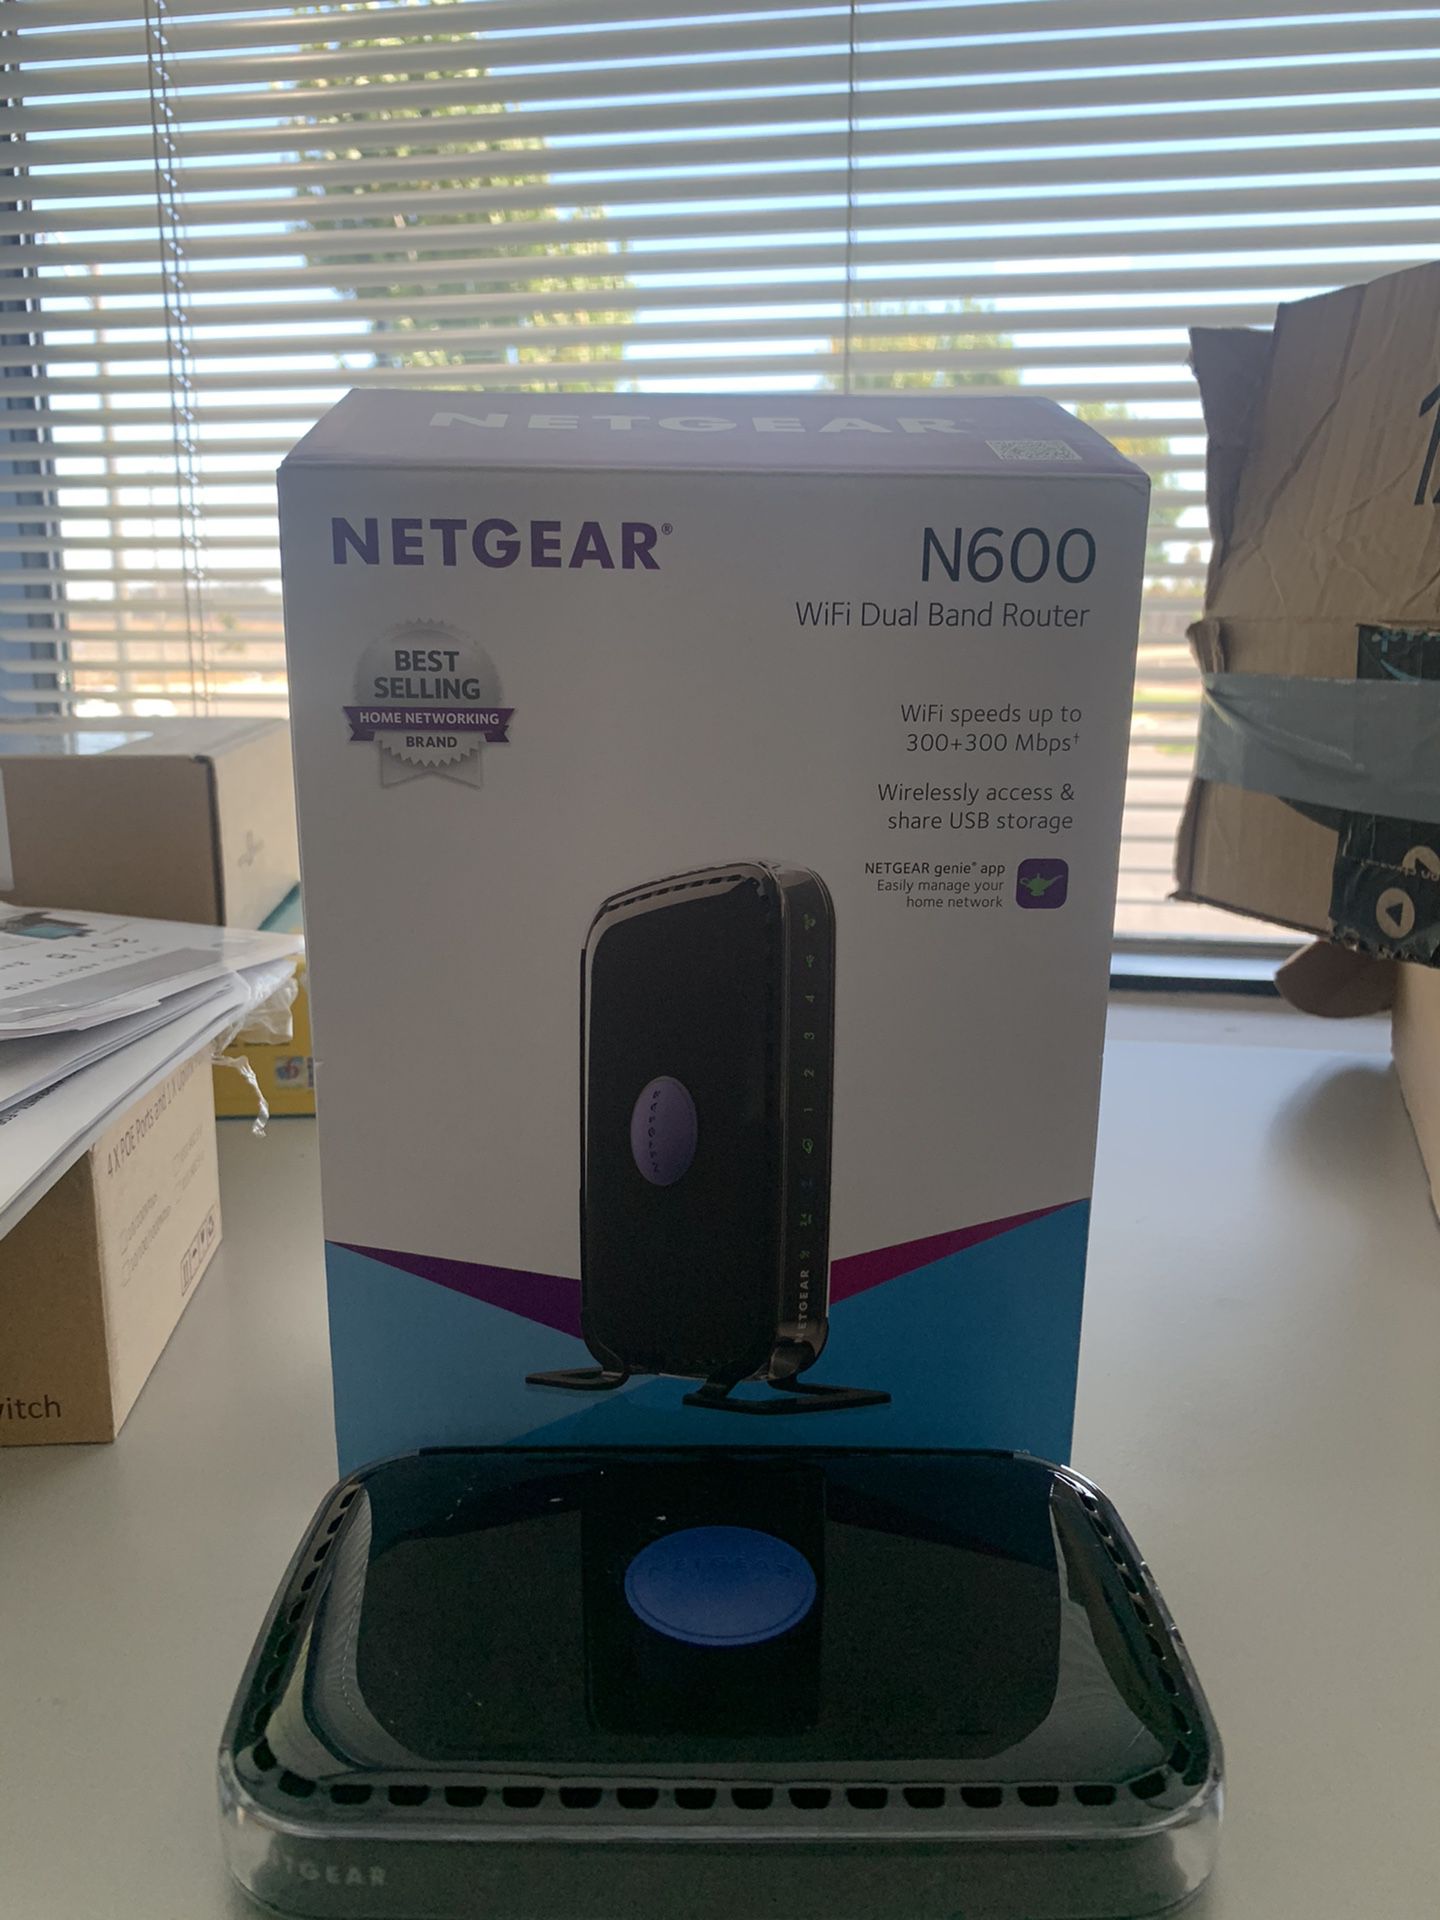 Netgear n600 wireless router